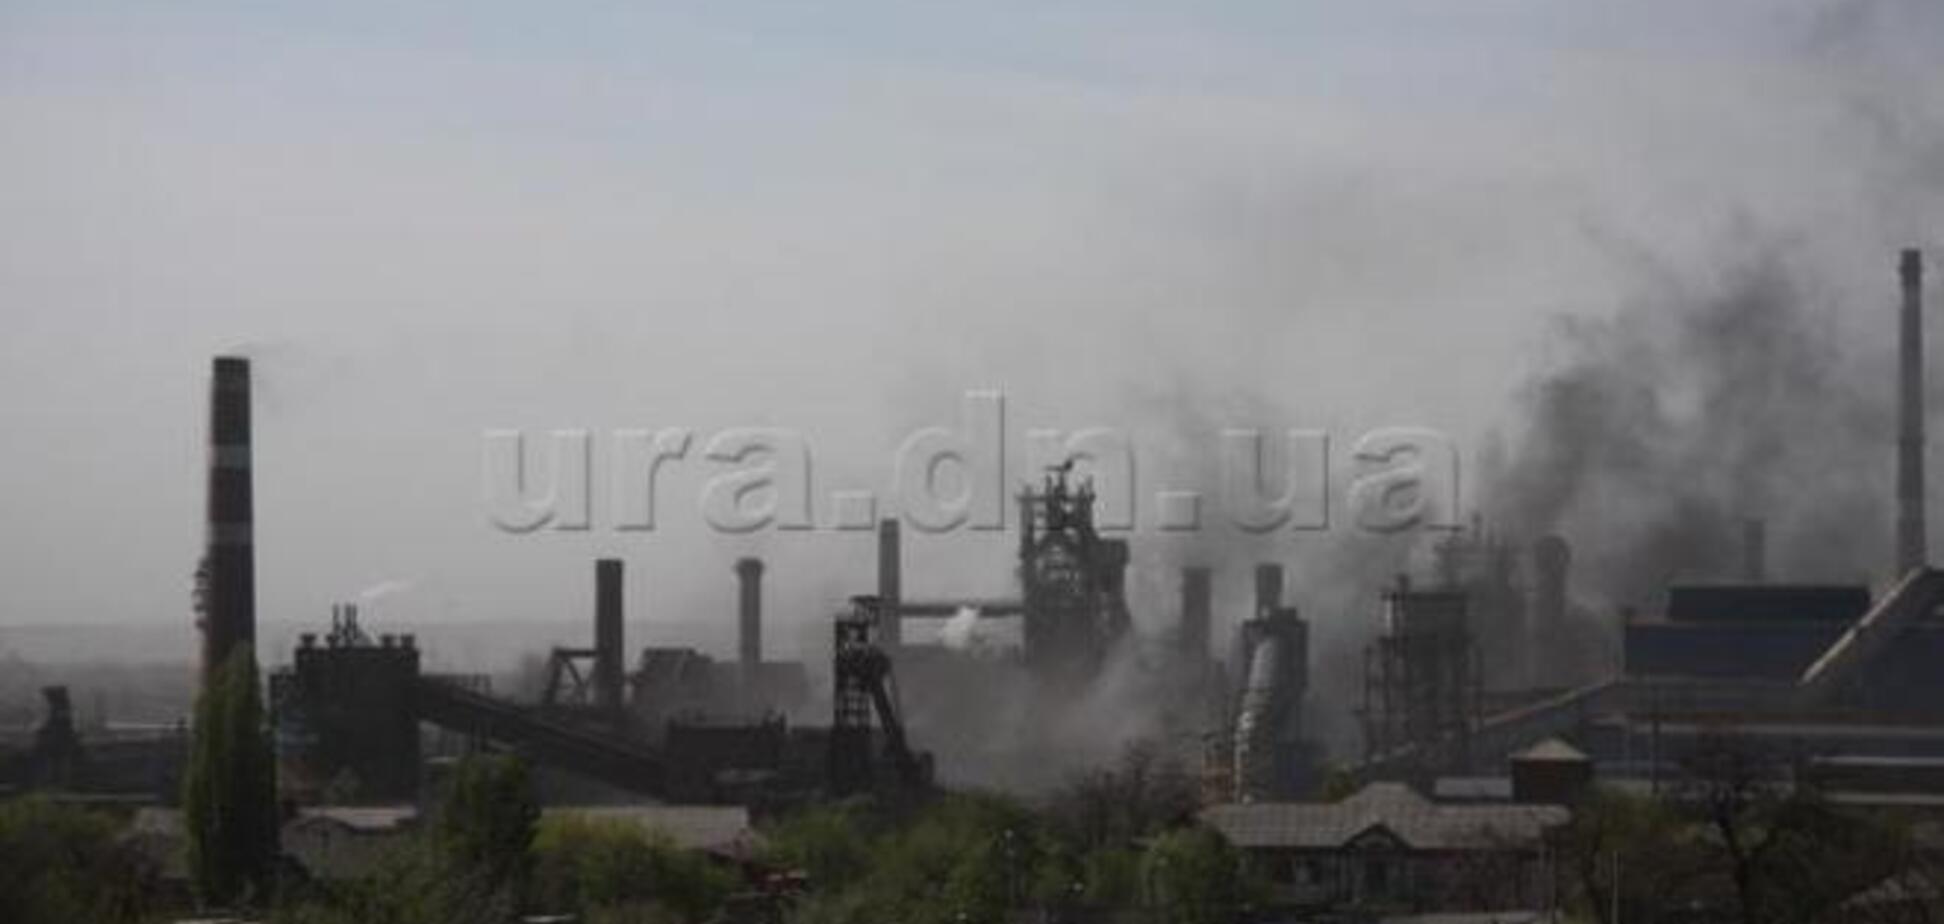 На Донецком металлургическом заводе произошел взрыв - СМИ